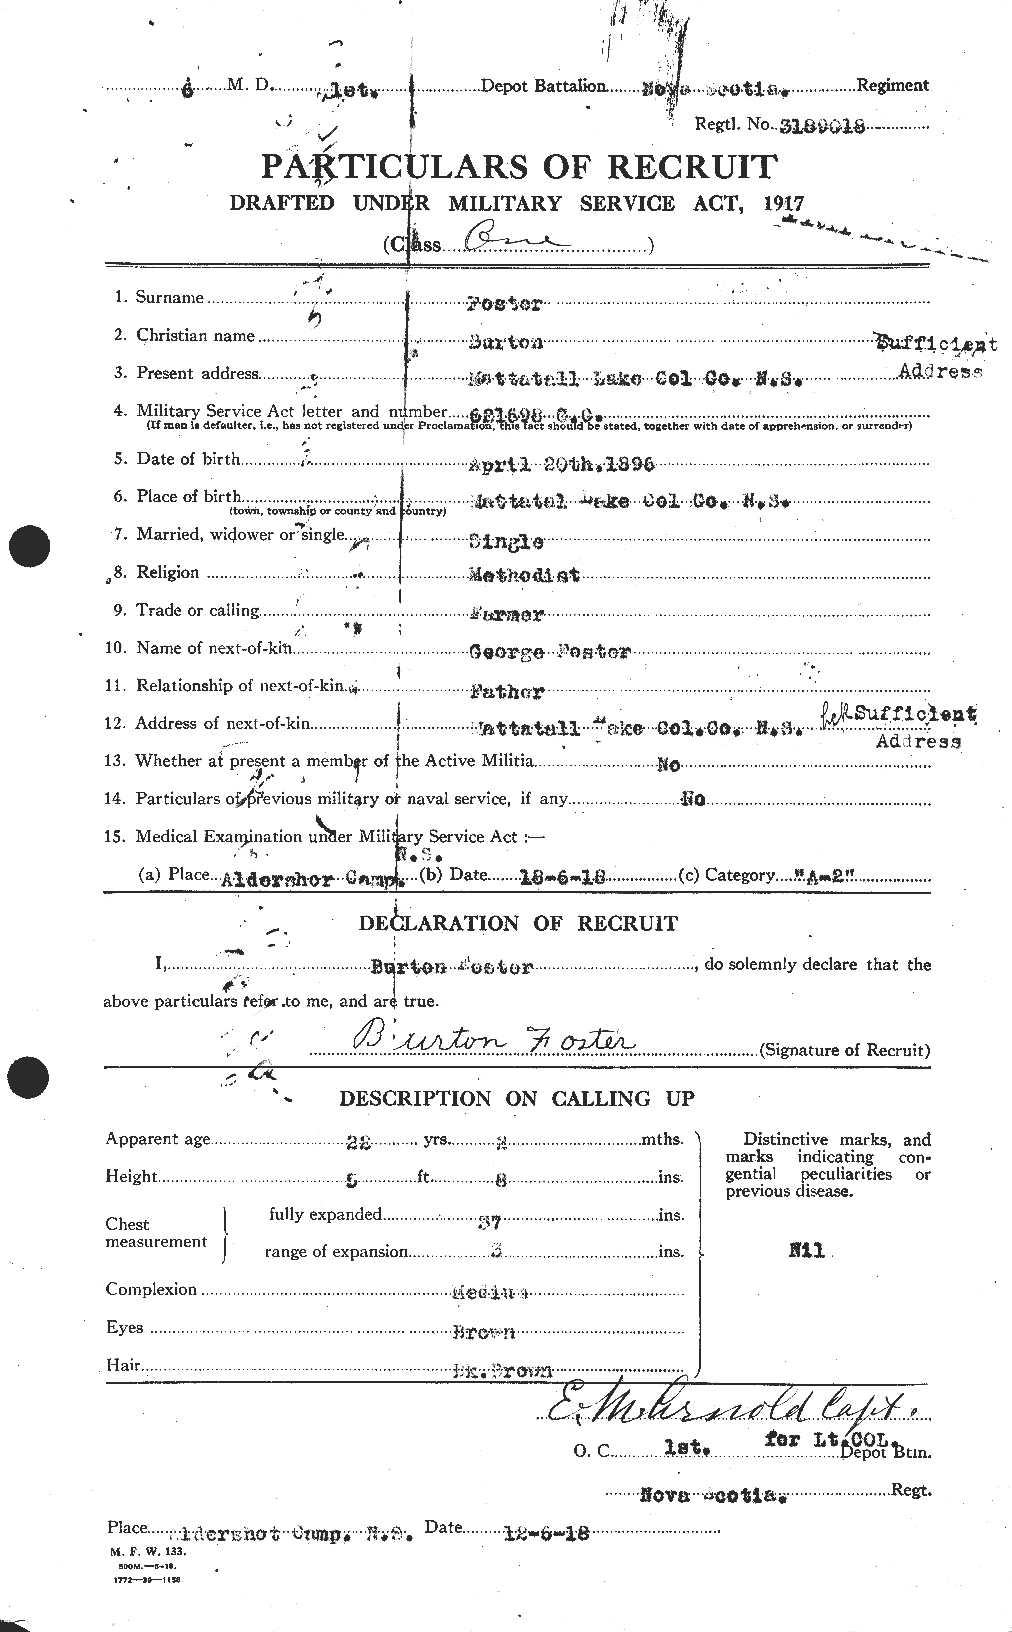 Dossiers du Personnel de la Première Guerre mondiale - CEC 330492a